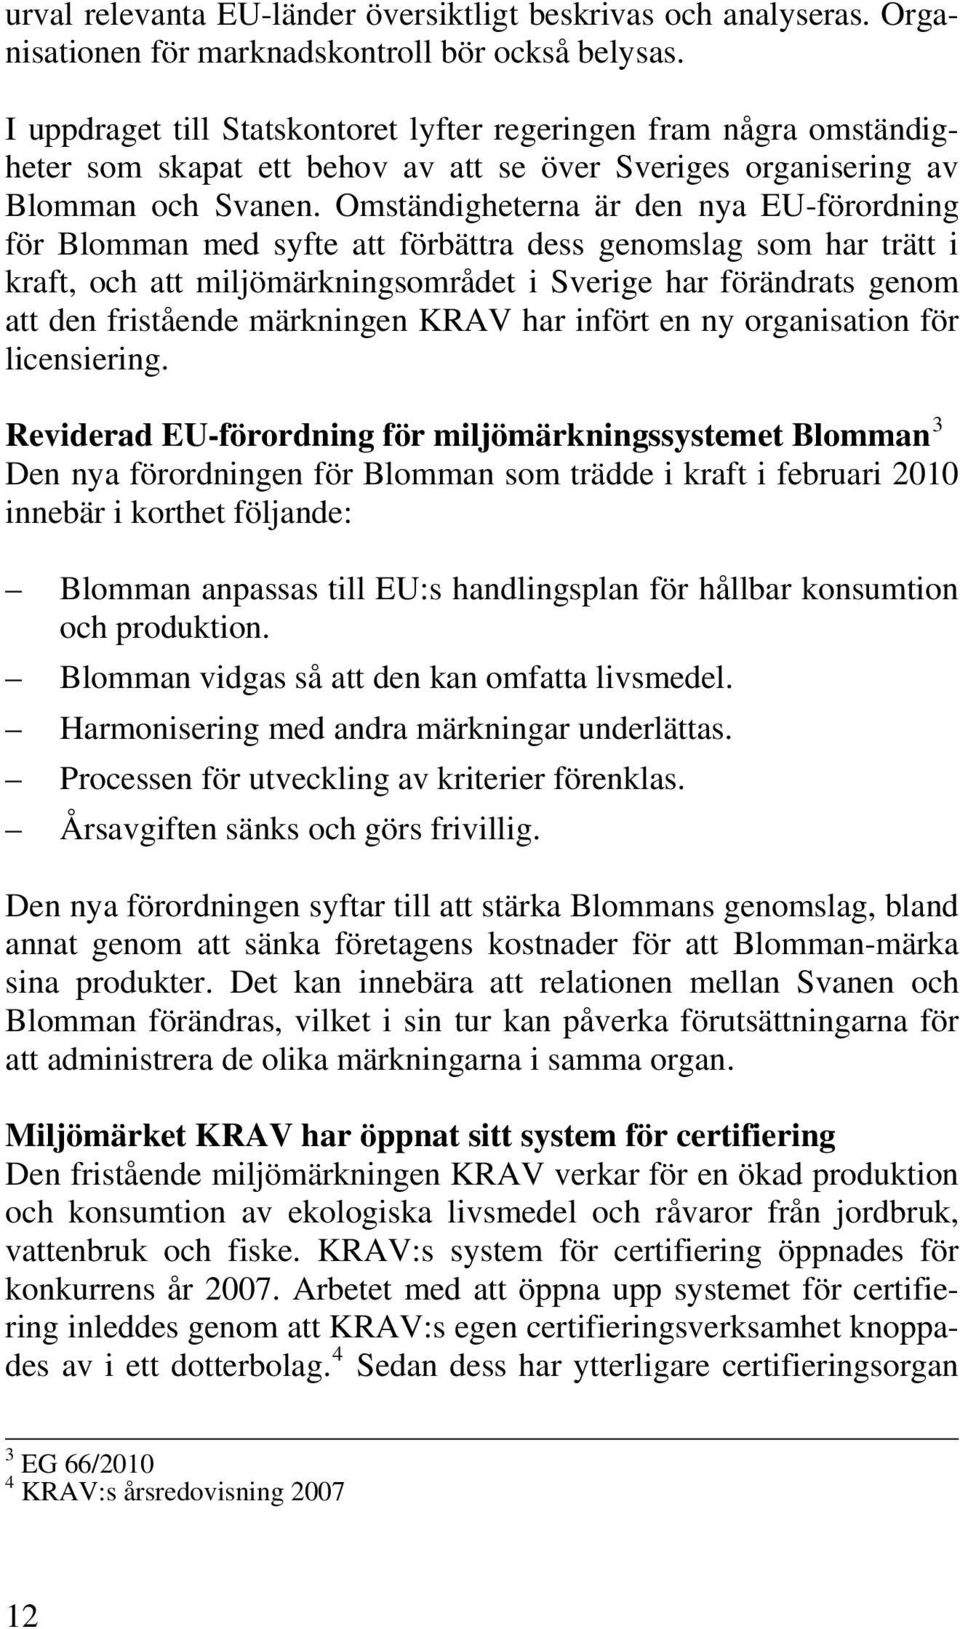 Omständigheterna är den nya EU-förordning för Blomman med syfte att förbättra dess genomslag som har trätt i kraft, och att miljömärkningsområdet i Sverige har förändrats genom att den fristående